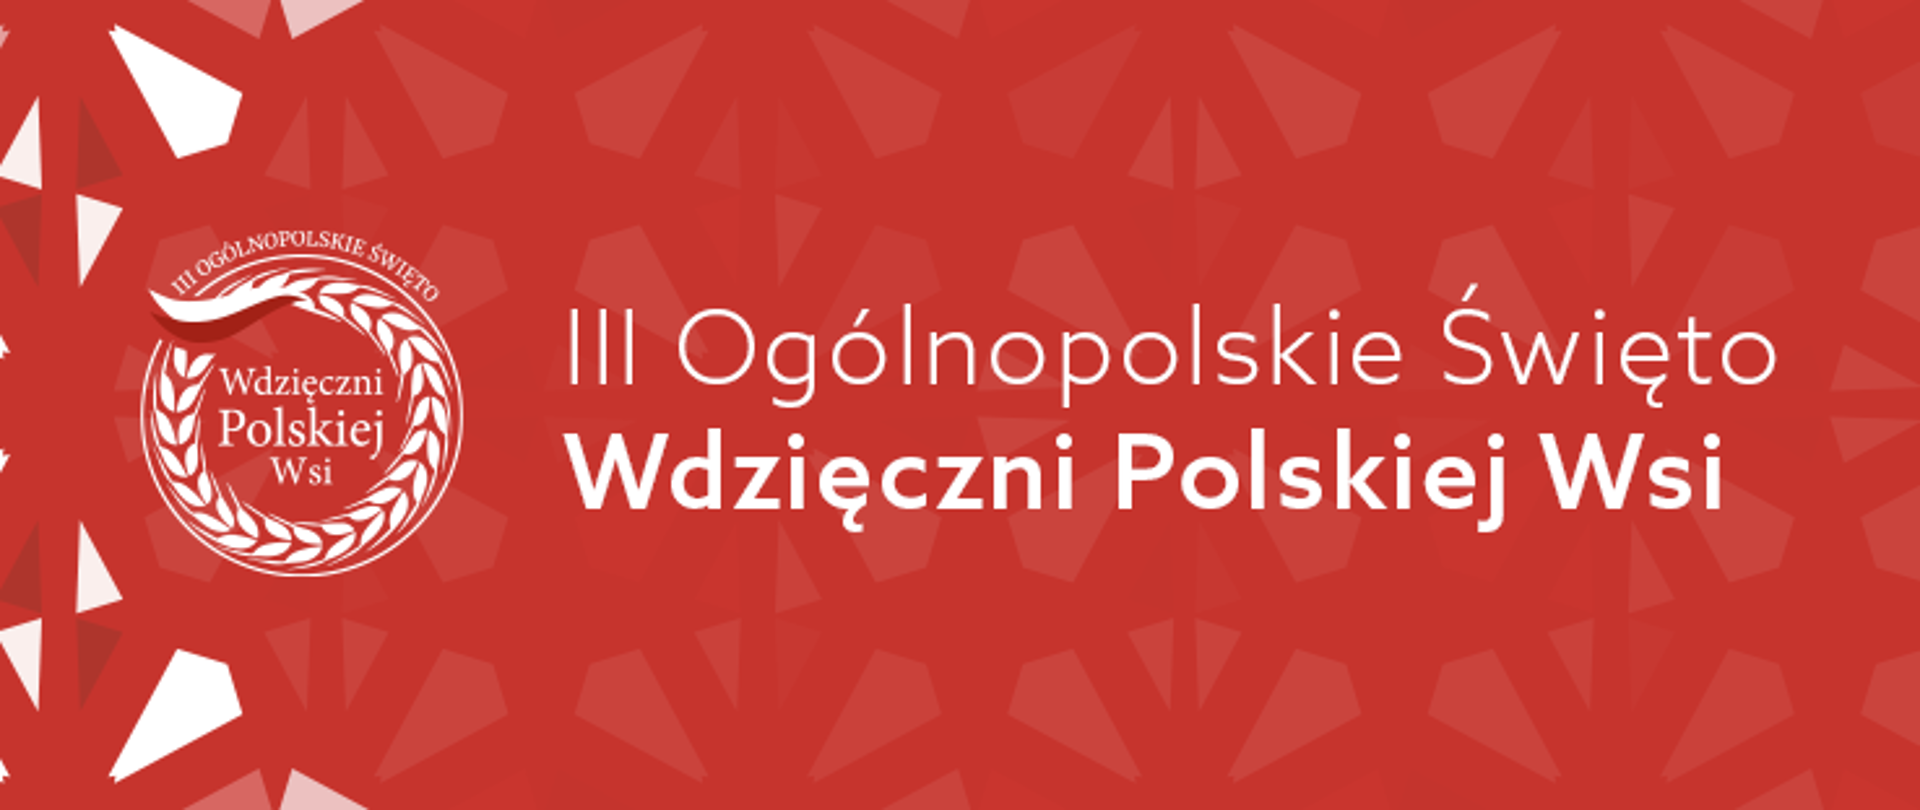 Biały napis III Ogólnopolskie Święto Wdzięczni Polskiej Wsi na czerwonym tle.